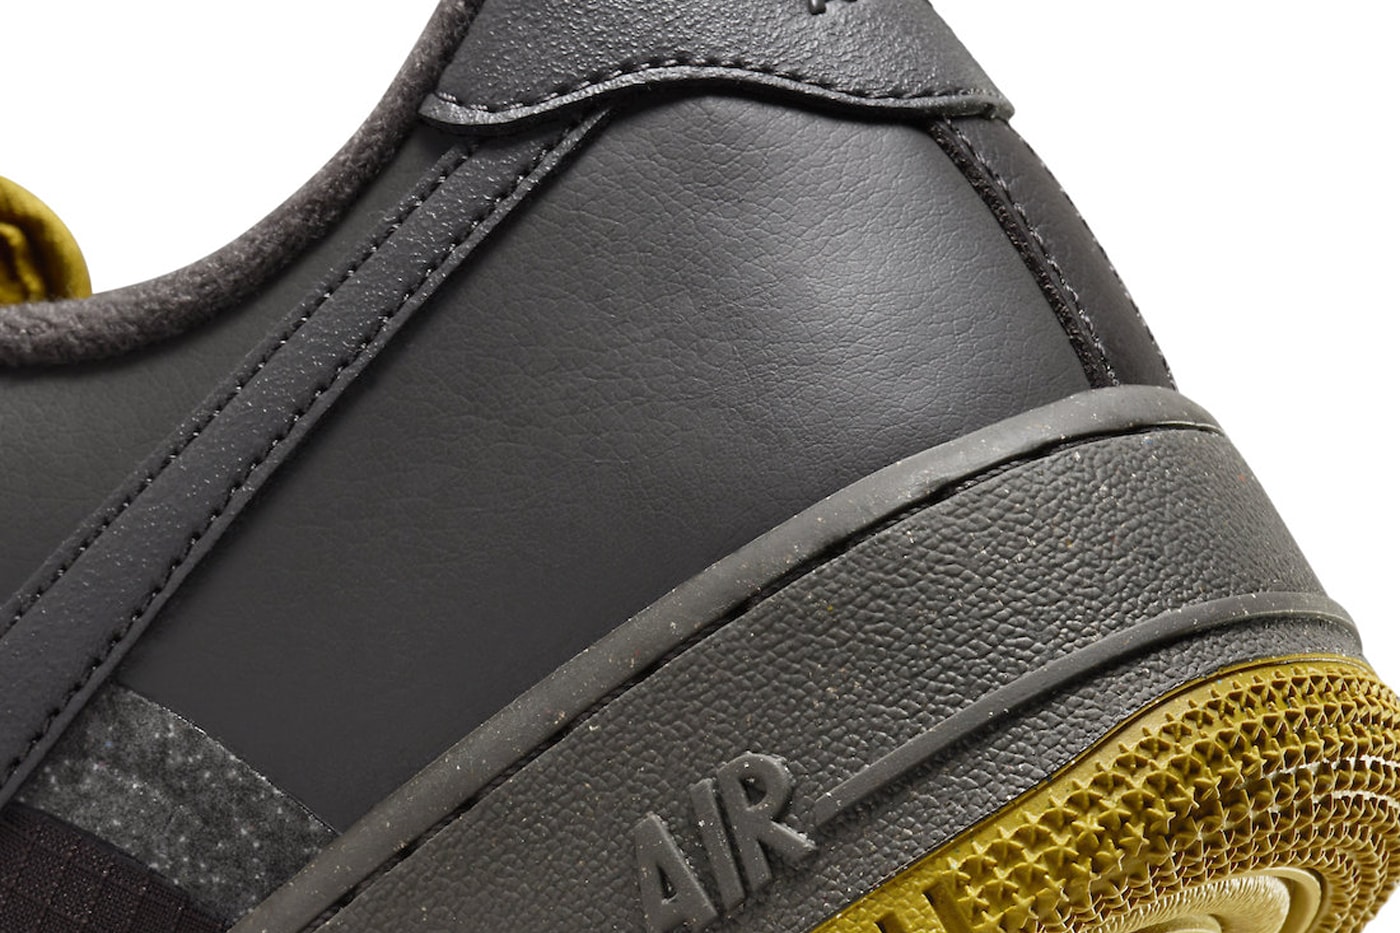 ナイキ エア フォース 1 ローに"ミディアムアッシュ"が登場 Nike Air Force 1 Low Surfaces in "Medium Ash" FB8877-200 Release info Medium Ash/Medium Ash-Bronzine-Blue Tint af1 swoosh shoes sneakers everyday